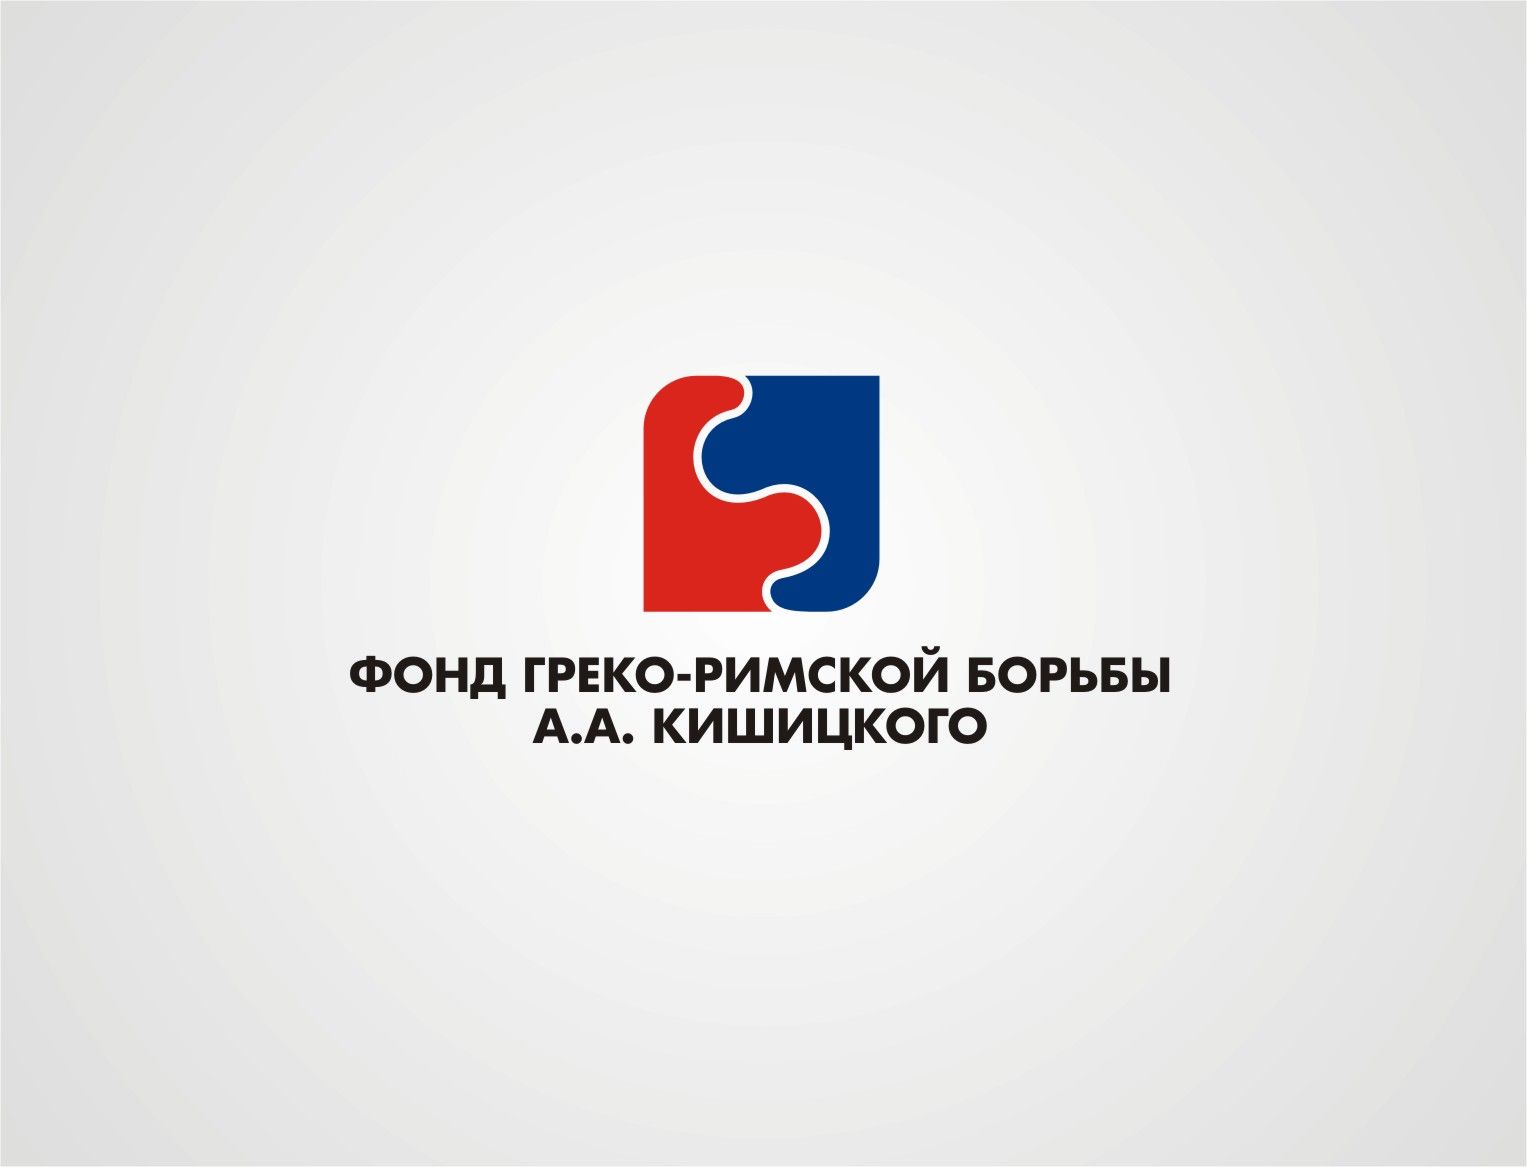 Лого и фирменный стиль для Фонд греко-римской борьбы А.А. Кишицкого - дизайнер YolkaGagarina